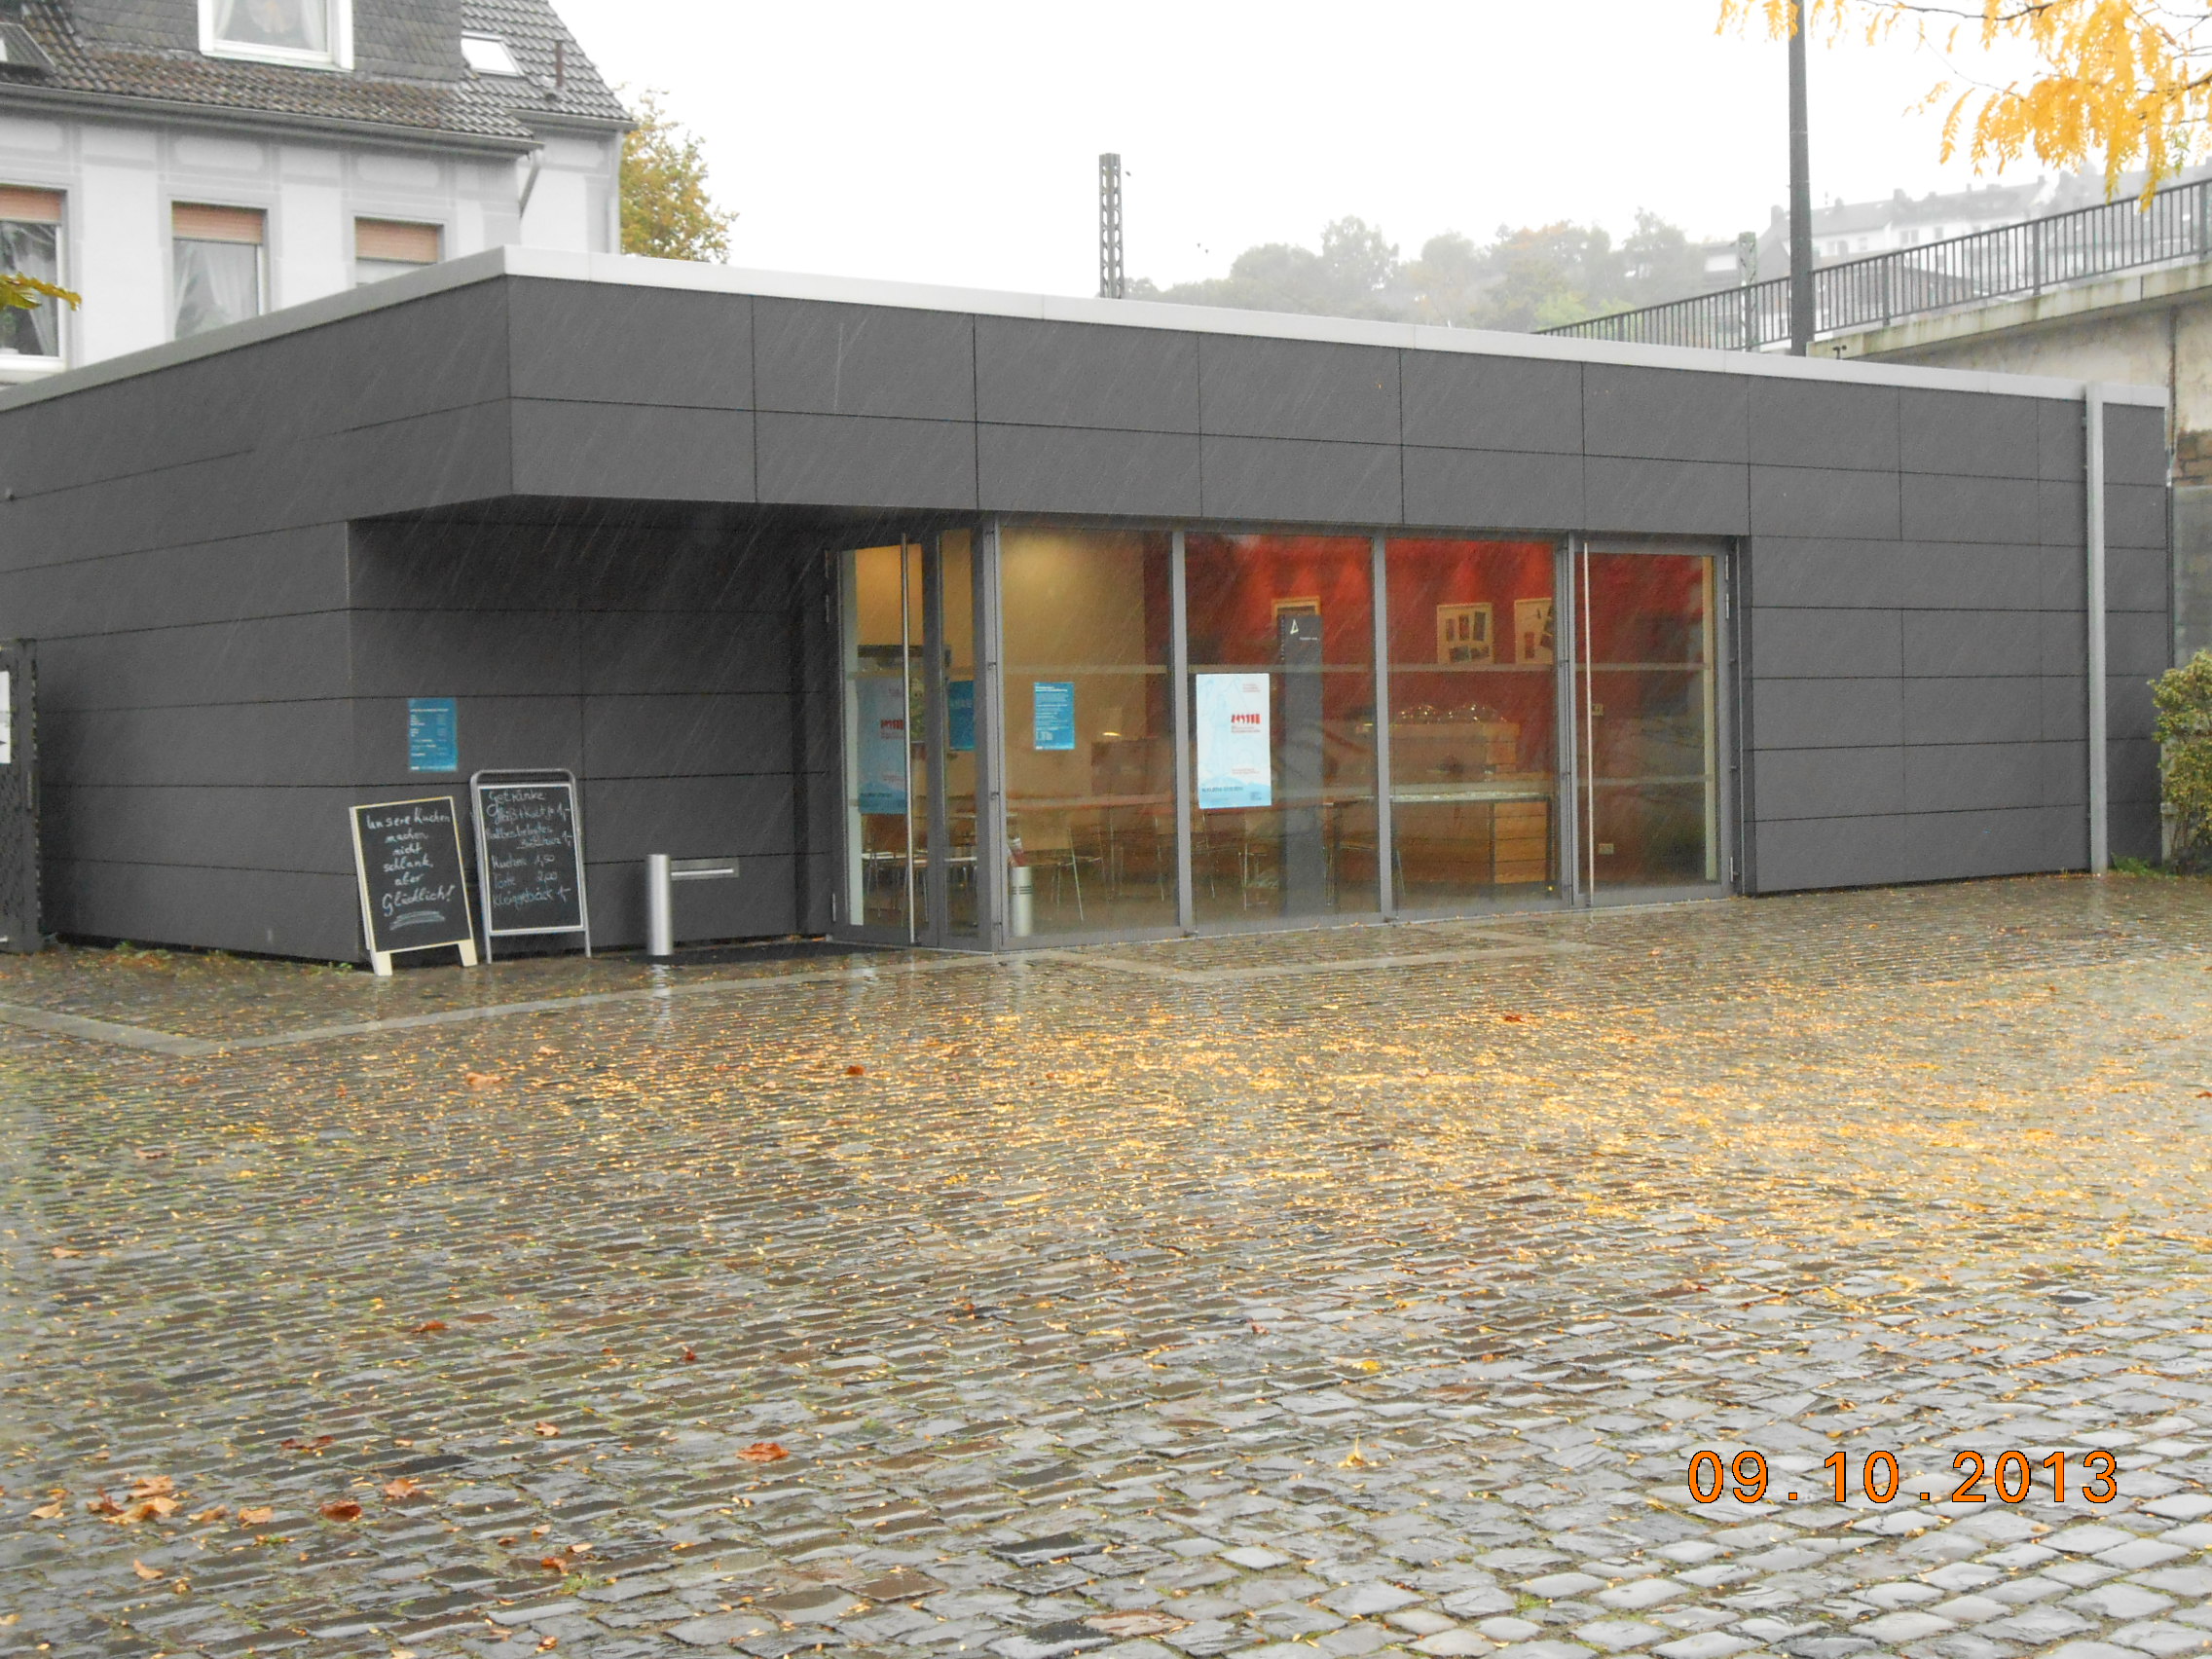 Museumscafe - Bistro Ansicht vom Innenhof